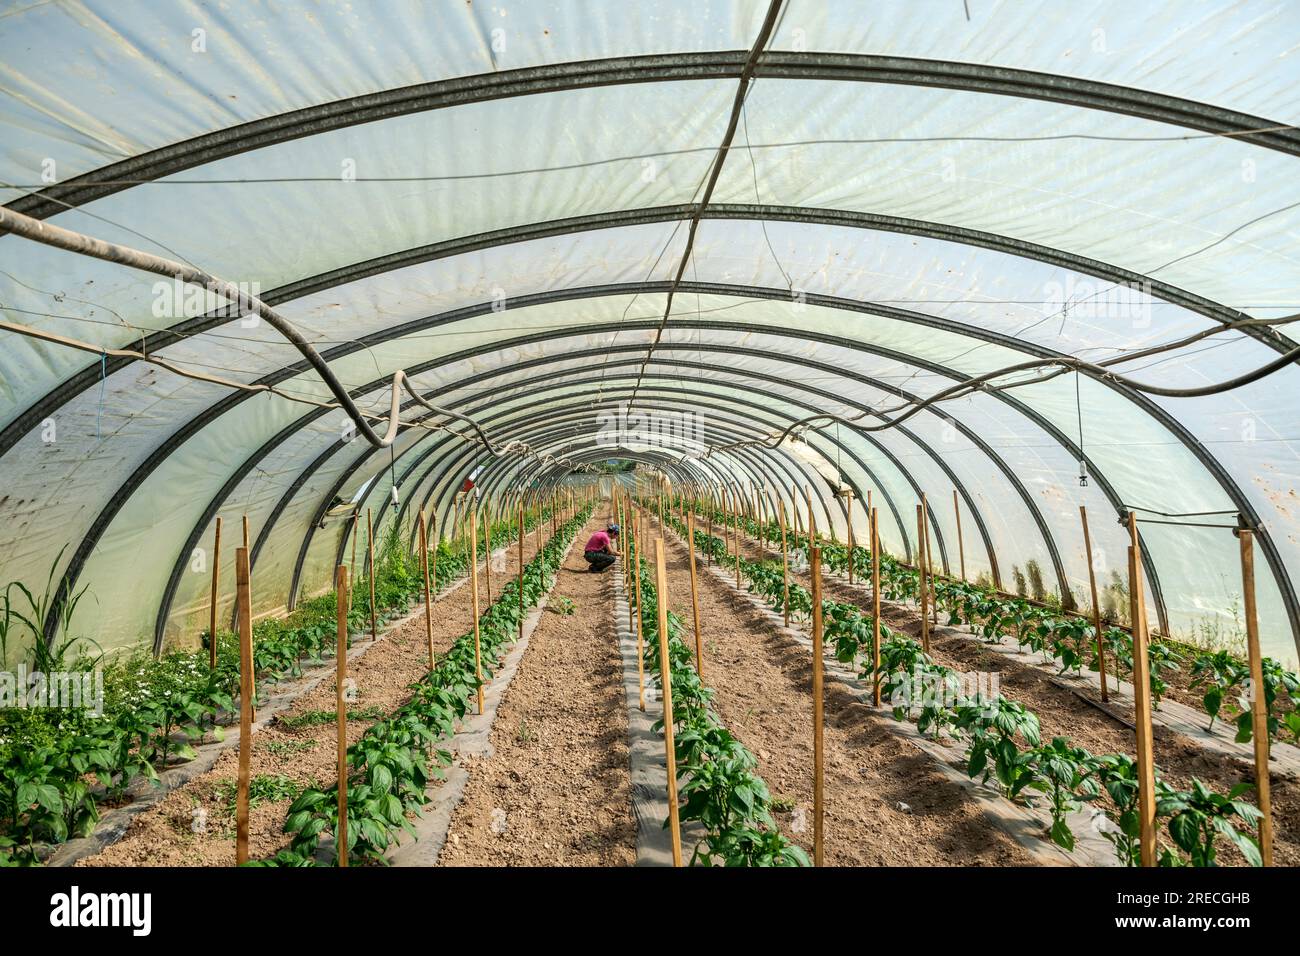 Aubagne (Südostfrankreich): Gemüseanbaubetrieb. Landarbeiter, die Pflanzen unter einem Kunststoffgewächshaus prüfen Stockfoto